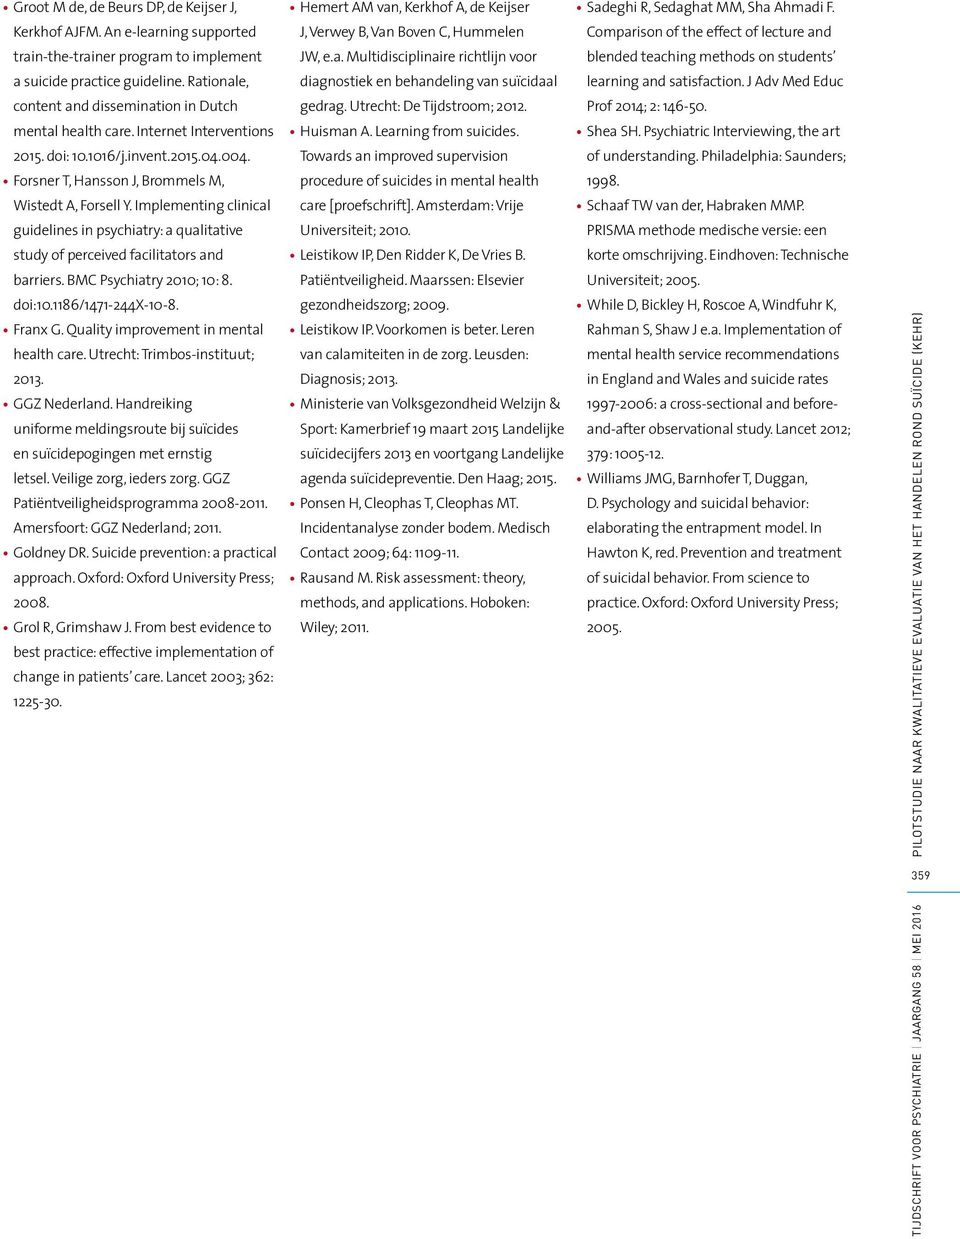 Rationale, diagnostiek en behandeling van suïcidaal learning and satisfaction. J Adv Med Educ content and dissemination in Dutch gedrag. Utrecht: De Tijdstroom; 2012. Prof 2014; 2: 146-50.